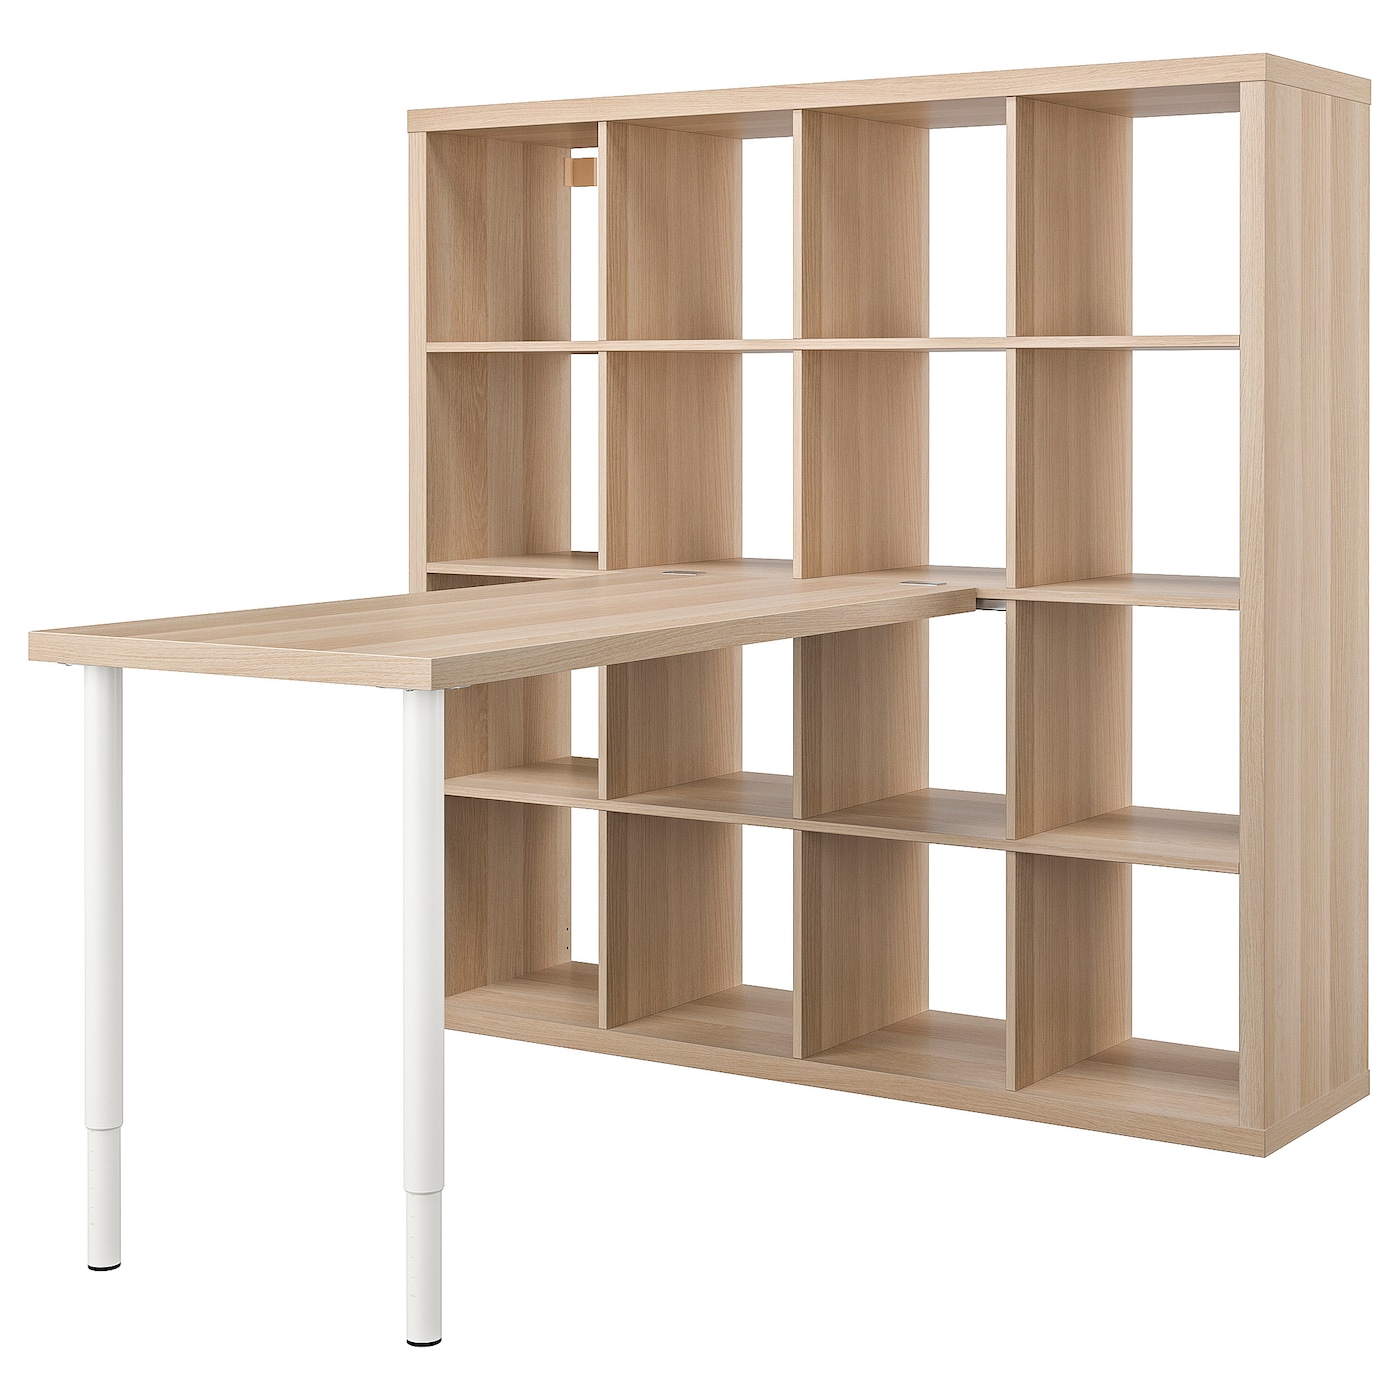 Письменный стол и стеллаж - IKEA KALLAX/LAGKAPTEN, 120х60 см, 147х39х147 см, под беленый дуб/белый, КАЛЛАКС/ЛАГКАПТЕН ИКЕА